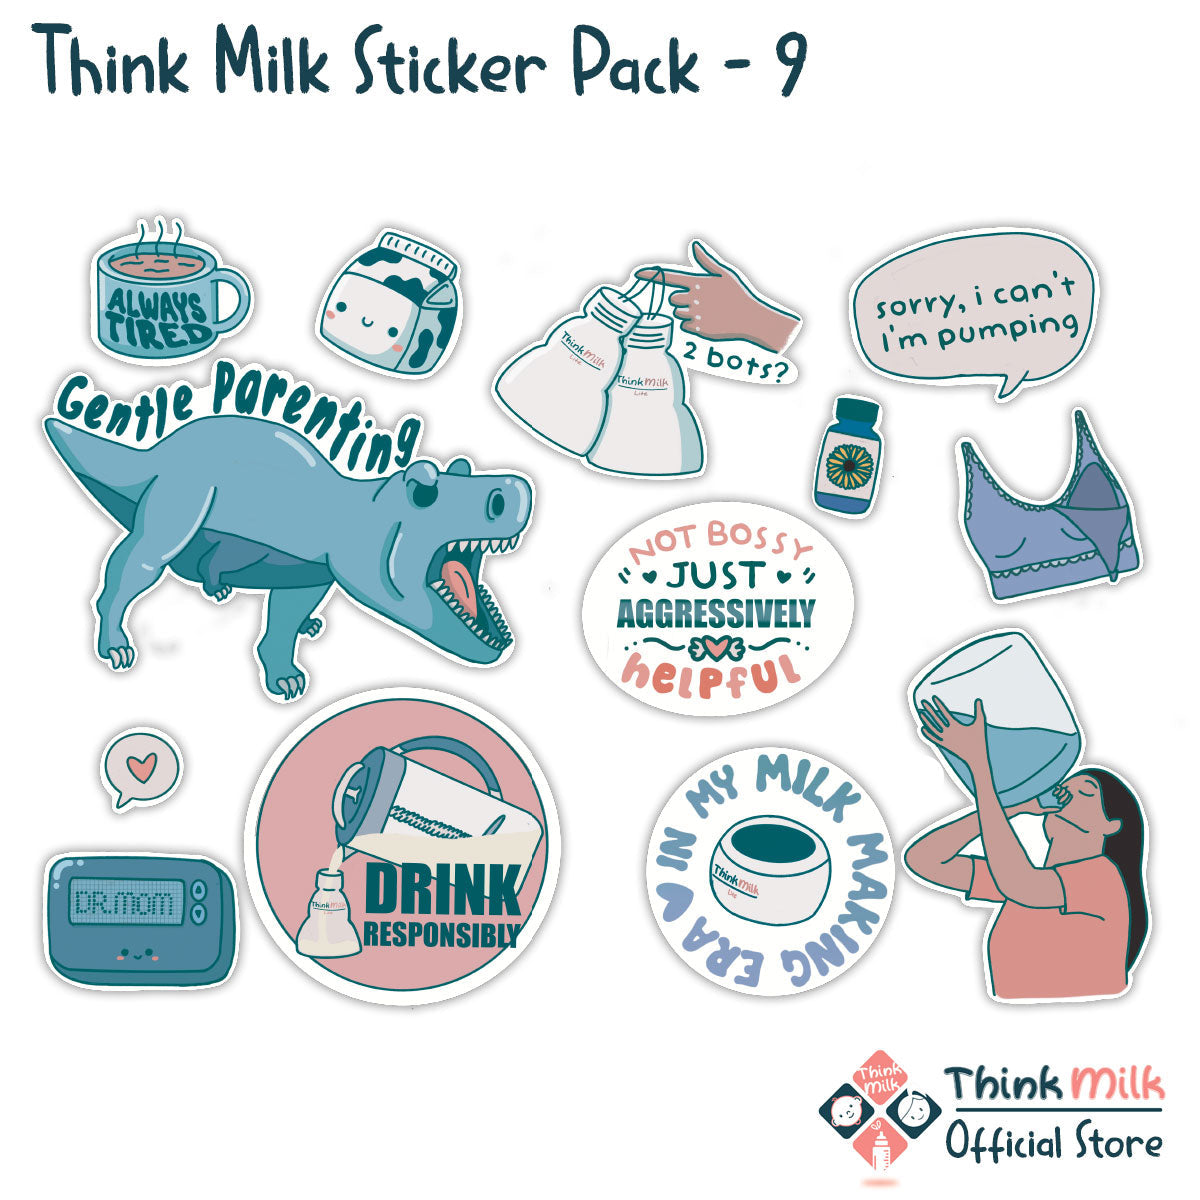 Think Milk Breastfeeding Sticker Pack